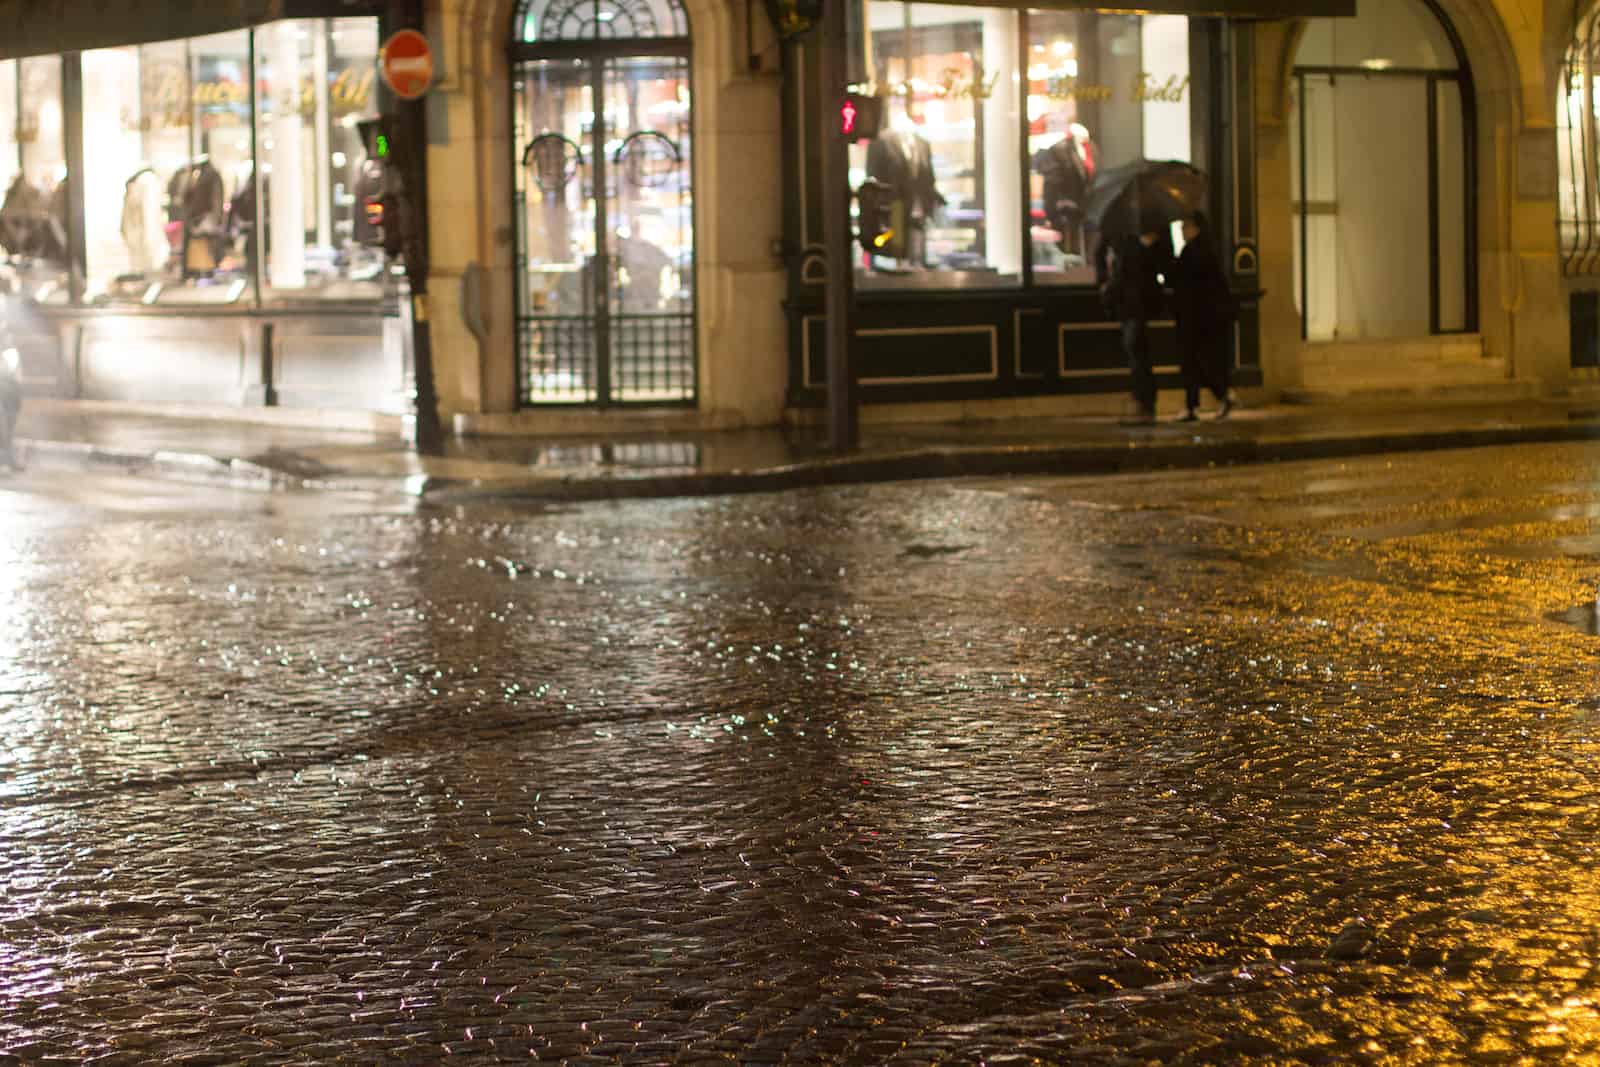 HiP Paris blog. Paris beneath a veil of rain. "In the rain, the pavement shines like silver..."